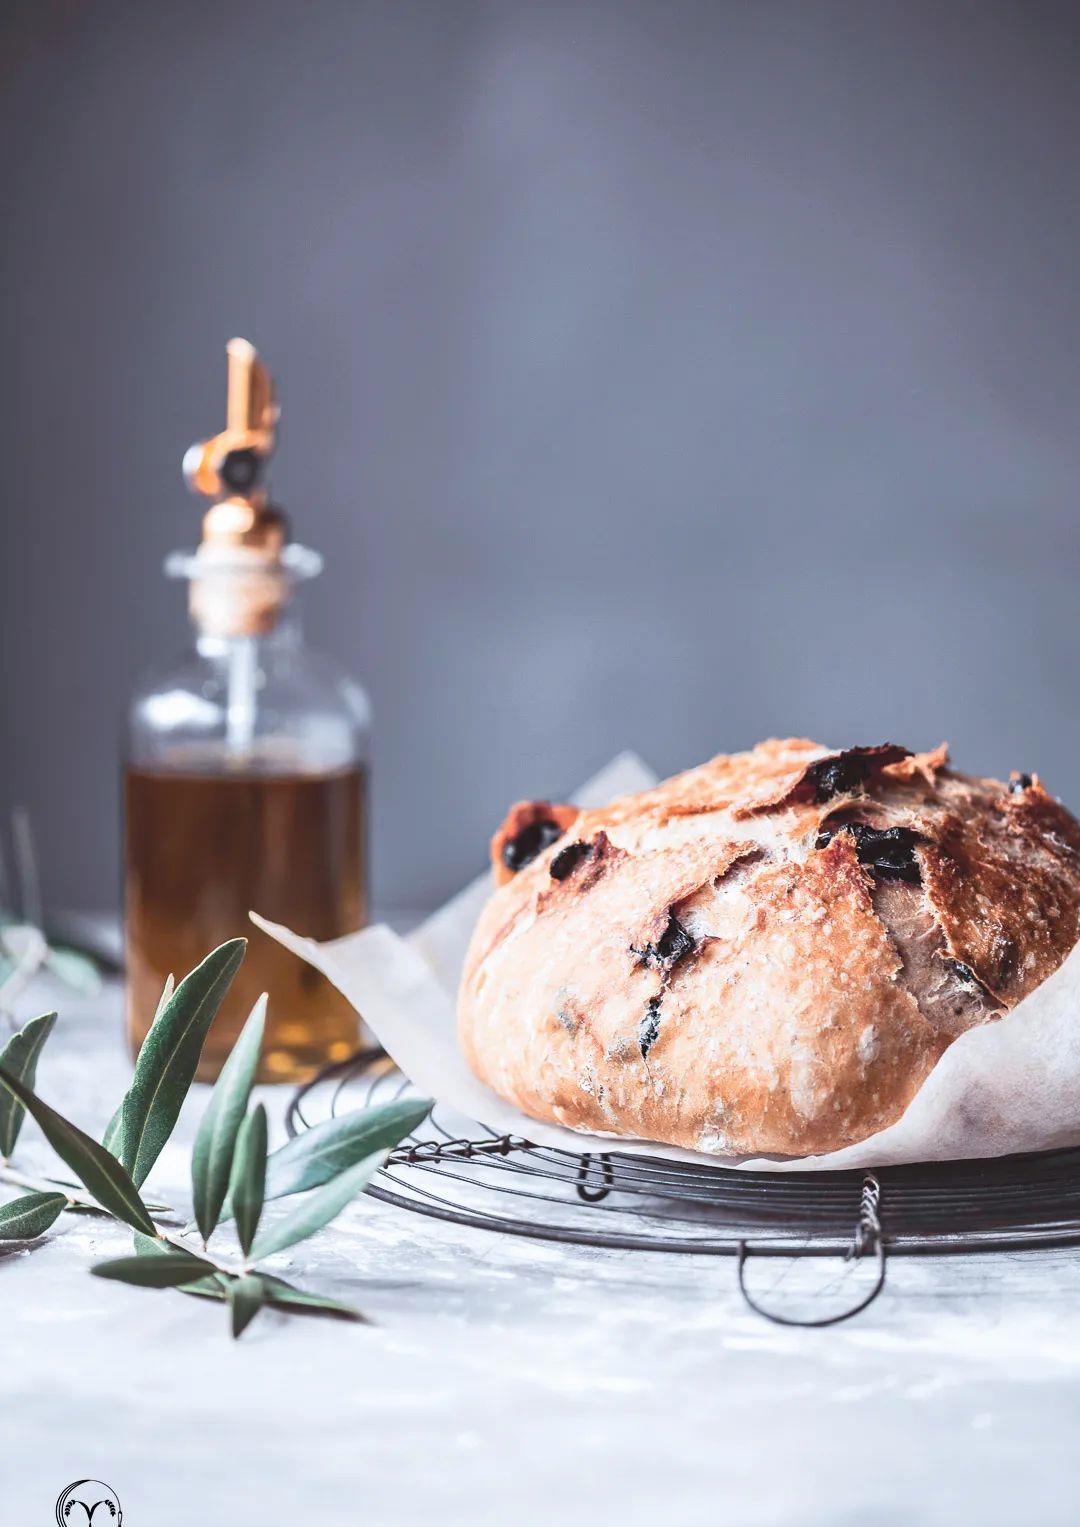 工匠式面包——经典希腊橄榄面包不可思议的简单演绎__财经头条